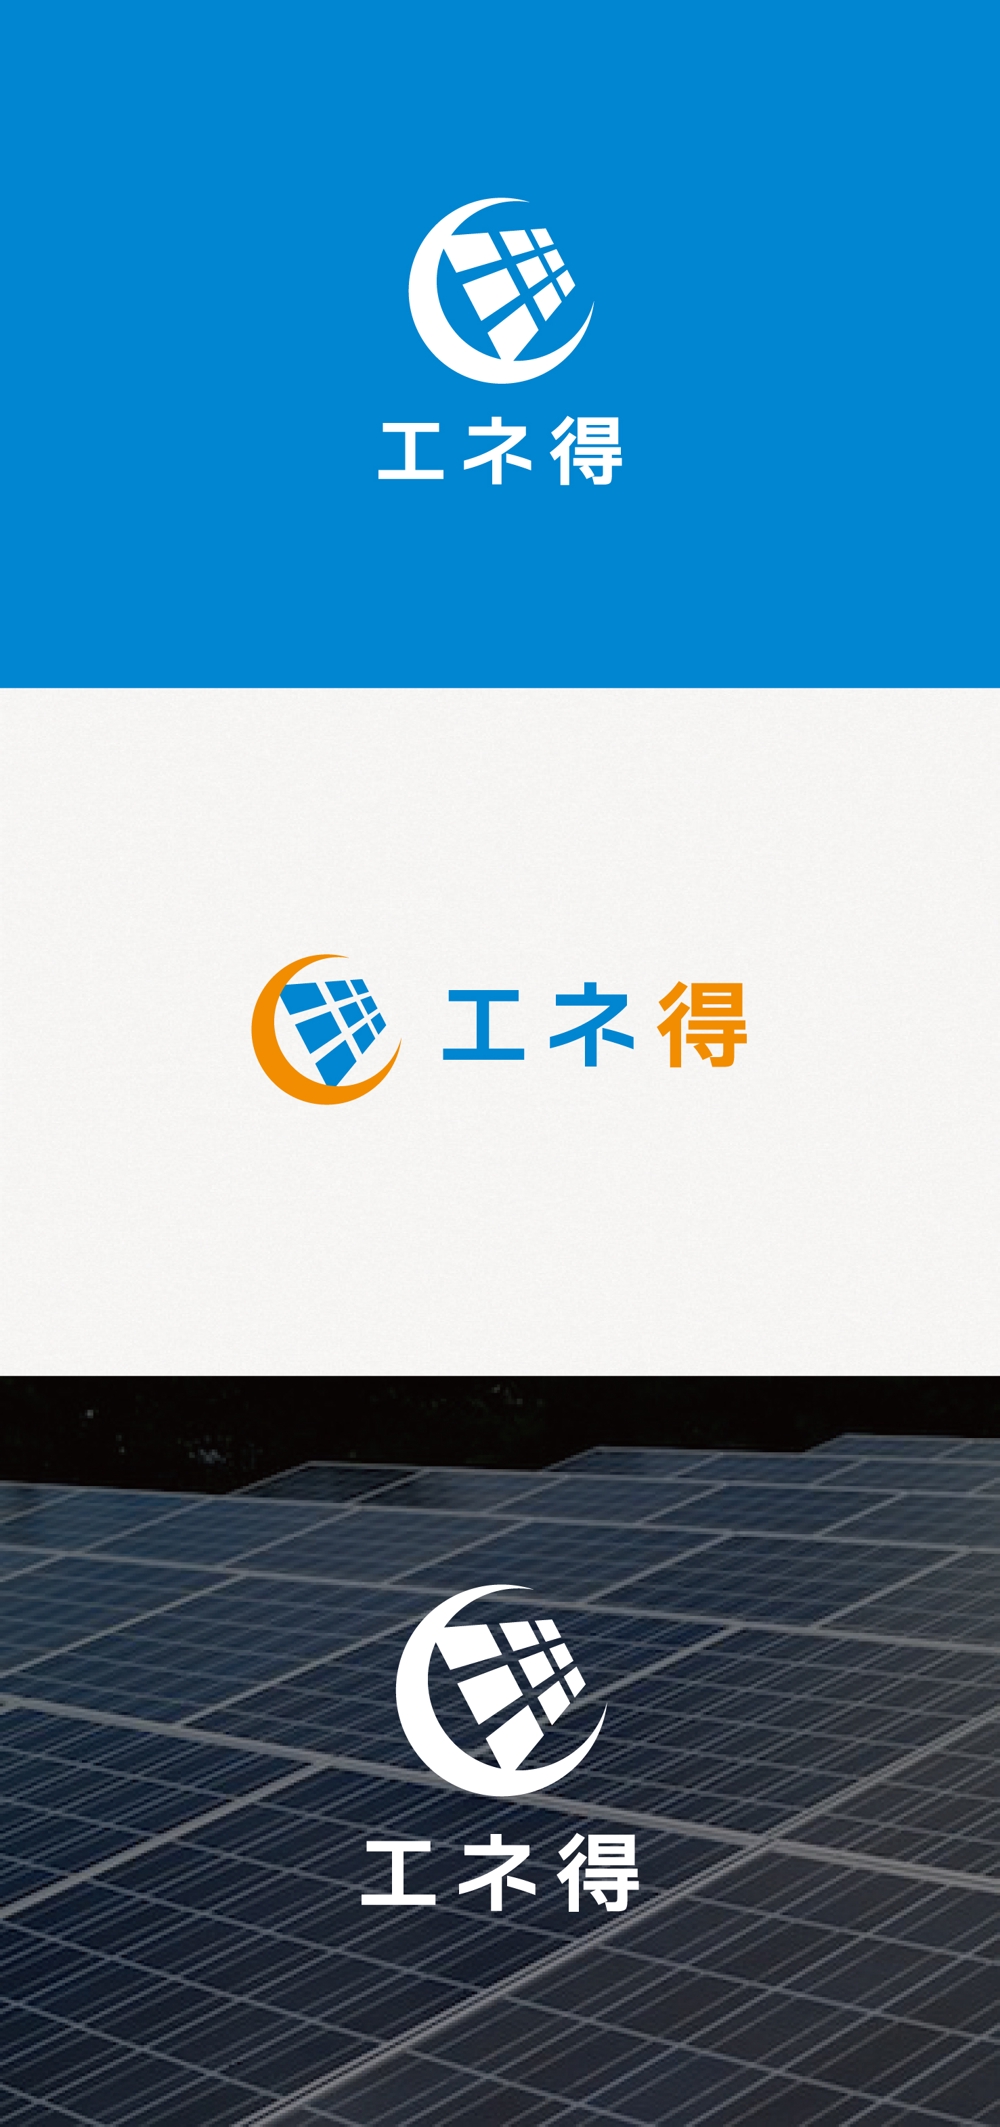 太陽光発電専門店「エネ得」のロゴ作成依頼